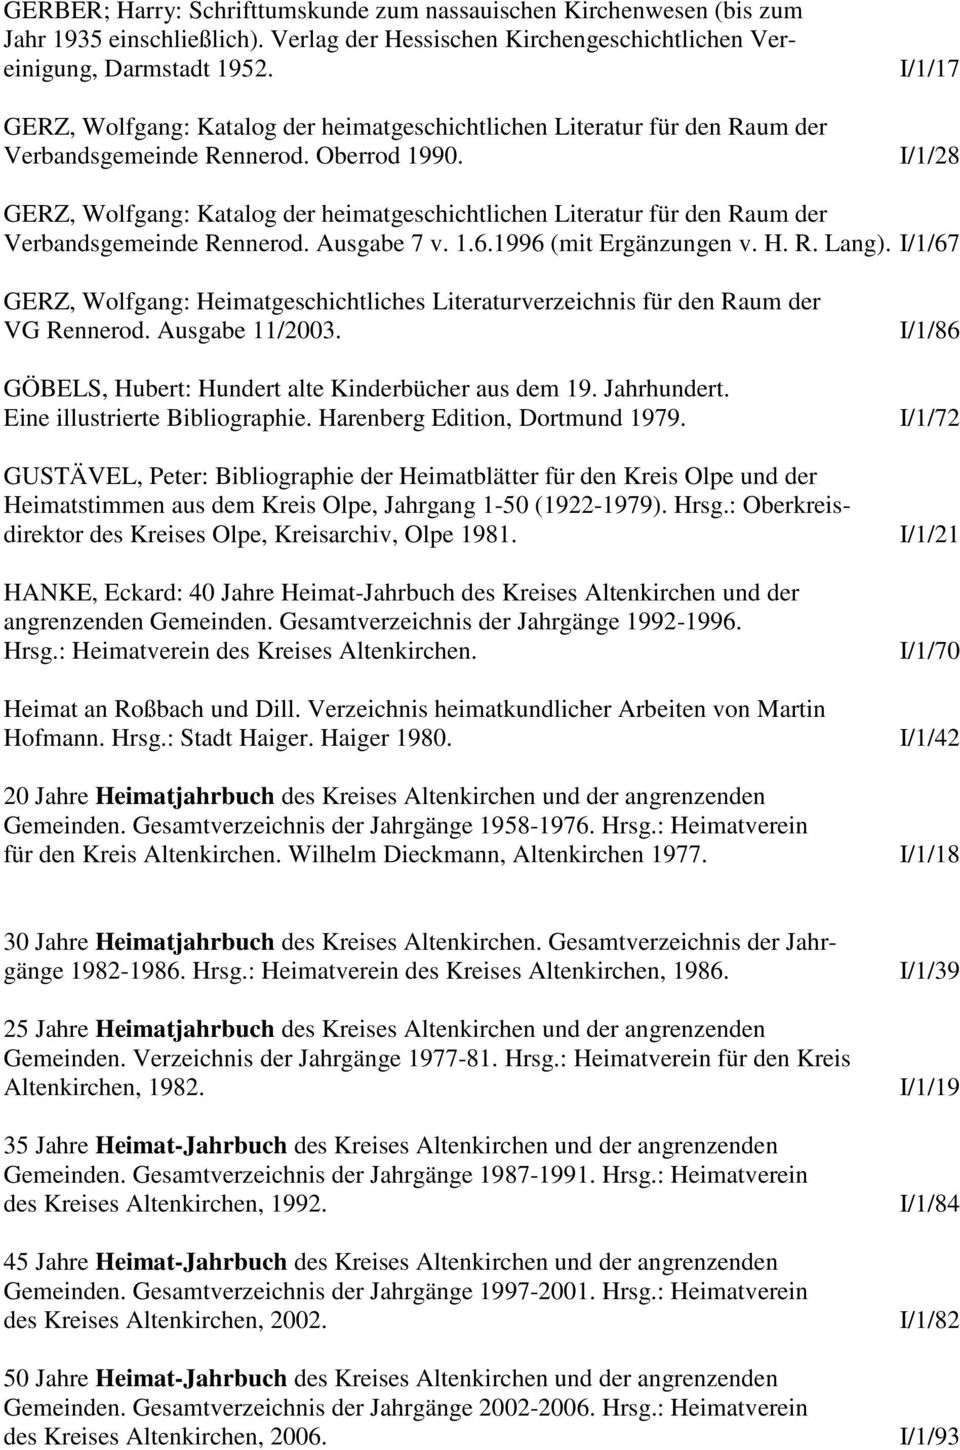 I/1/17 I/1/28 GERZ, Wolfgang: Katalog der heimatgeschichtlichen Literatur für den Raum der Verbandsgemeinde Rennerod. Ausgabe 7 v. 1.6.1996 (mit Ergänzungen v. H. R. Lang).